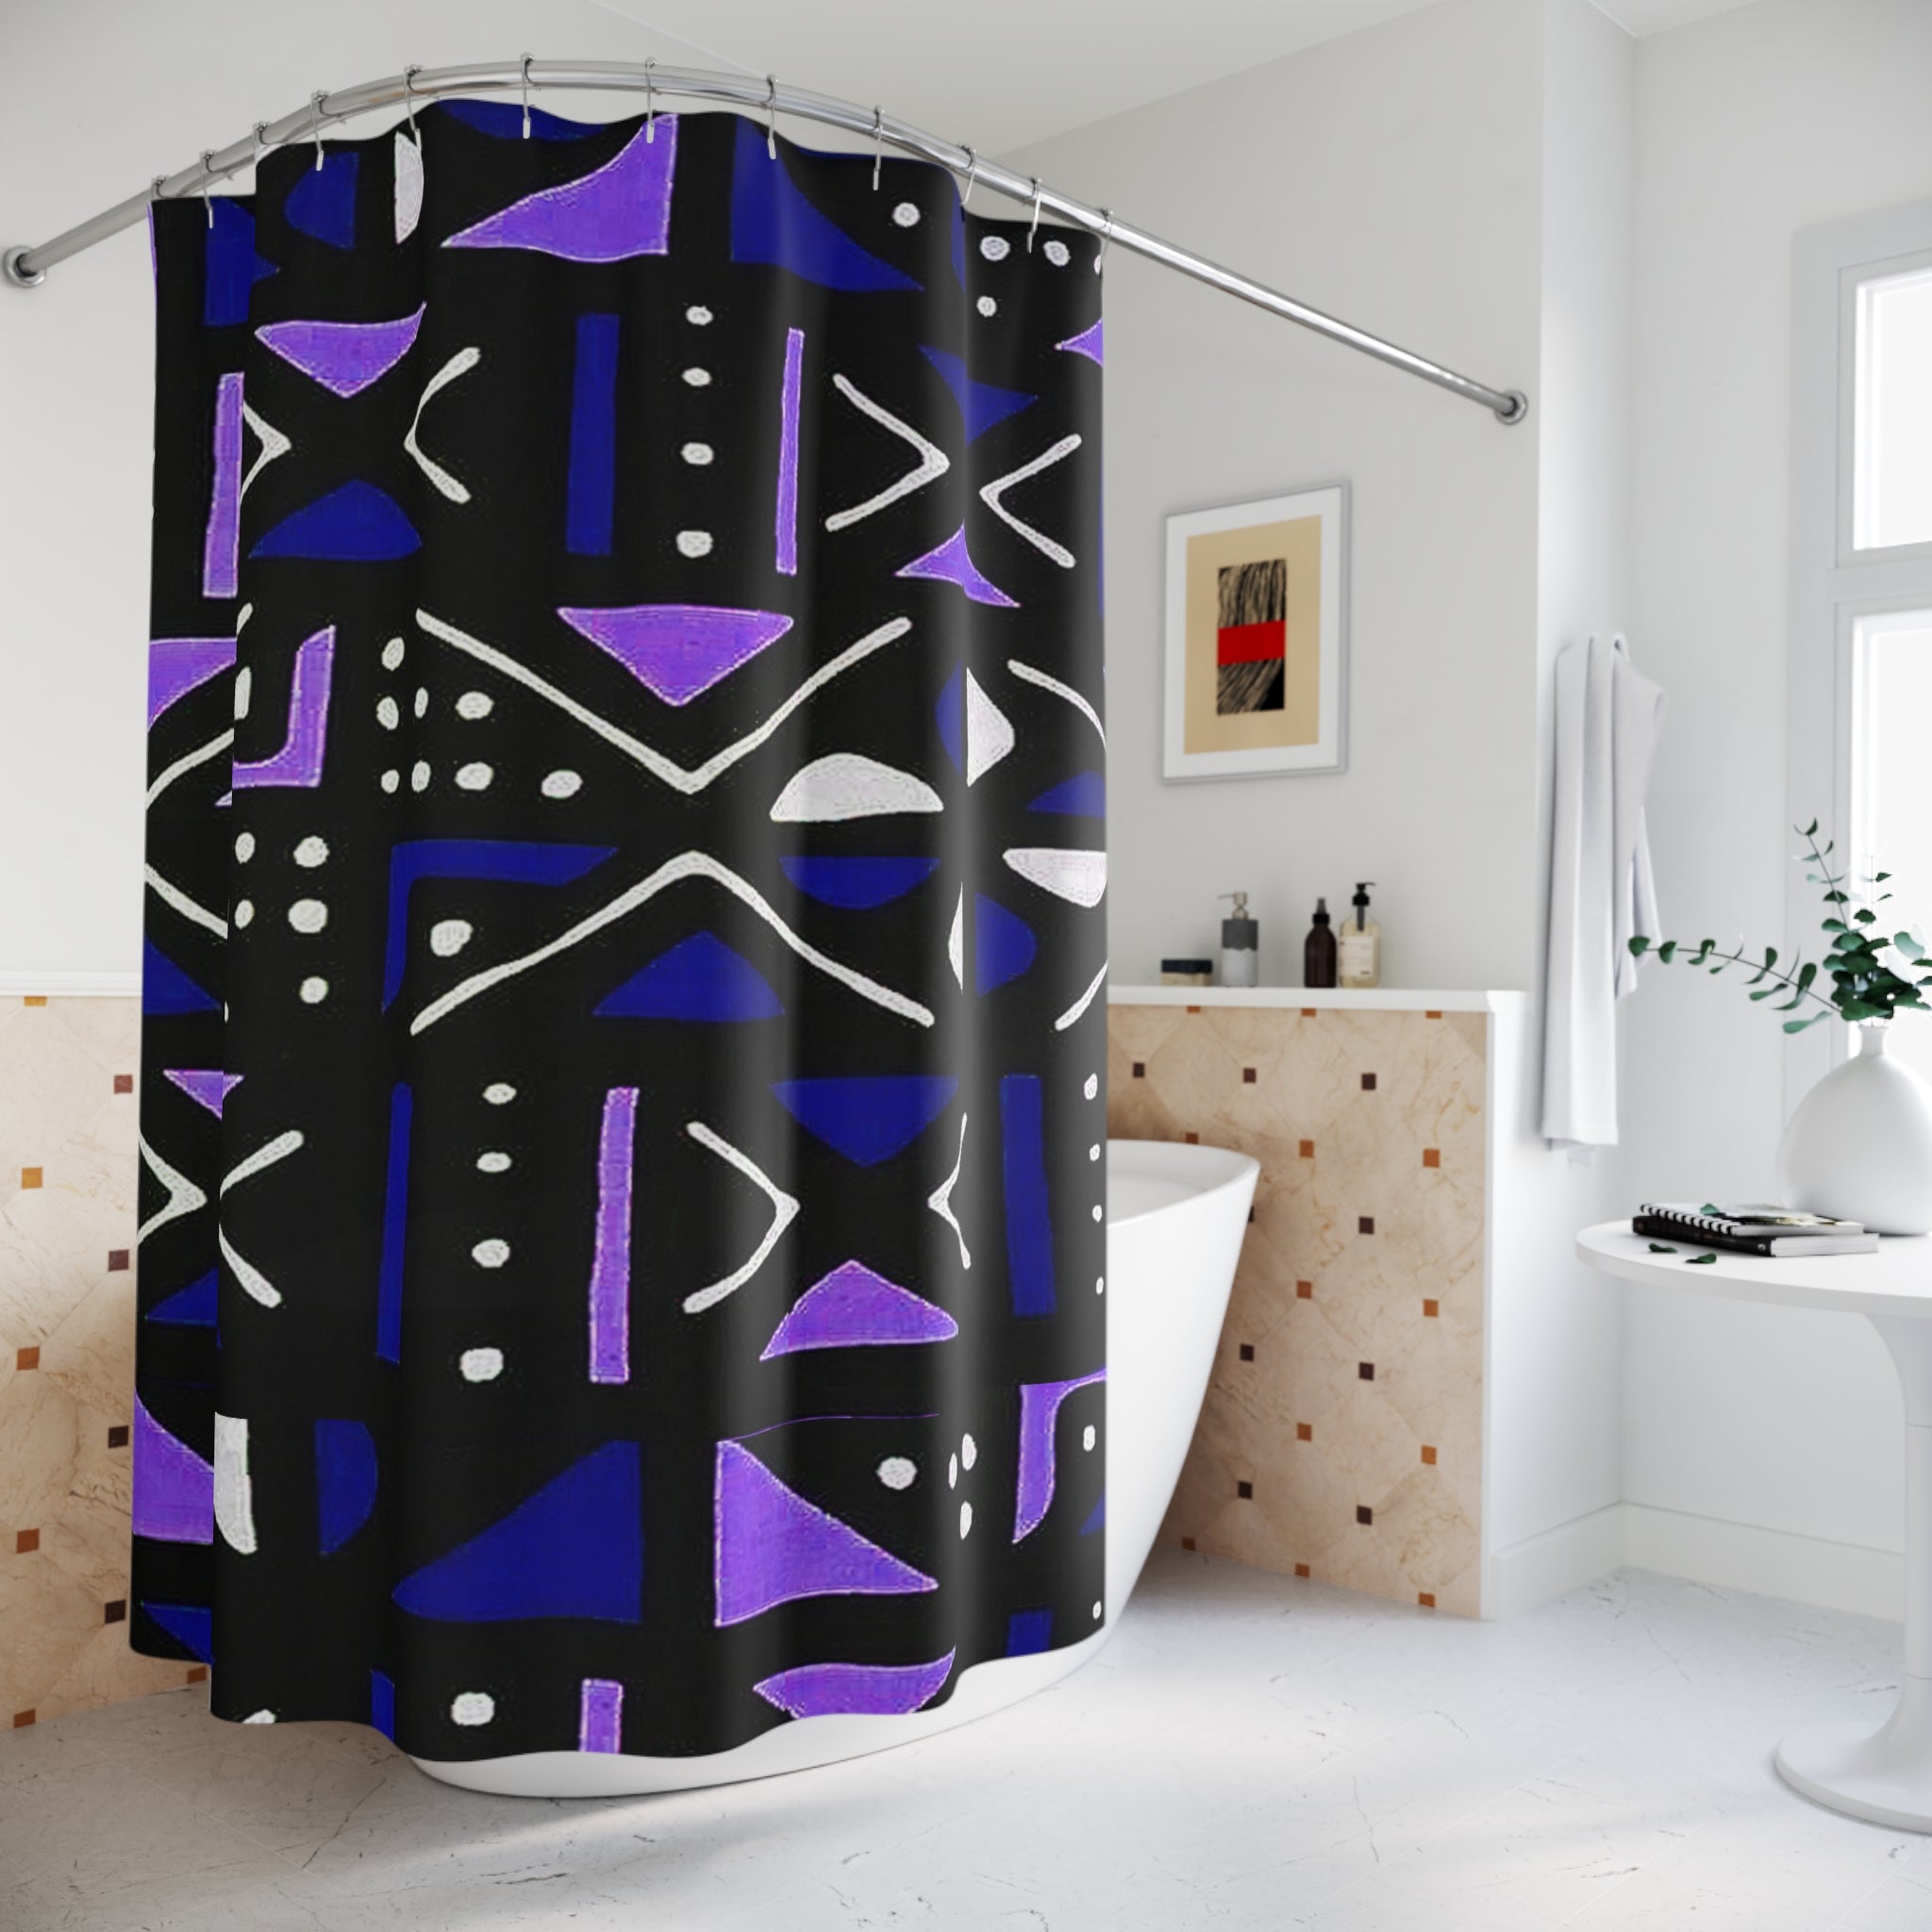 Authentic African Mudcloth Shower Curtain - Unique Design